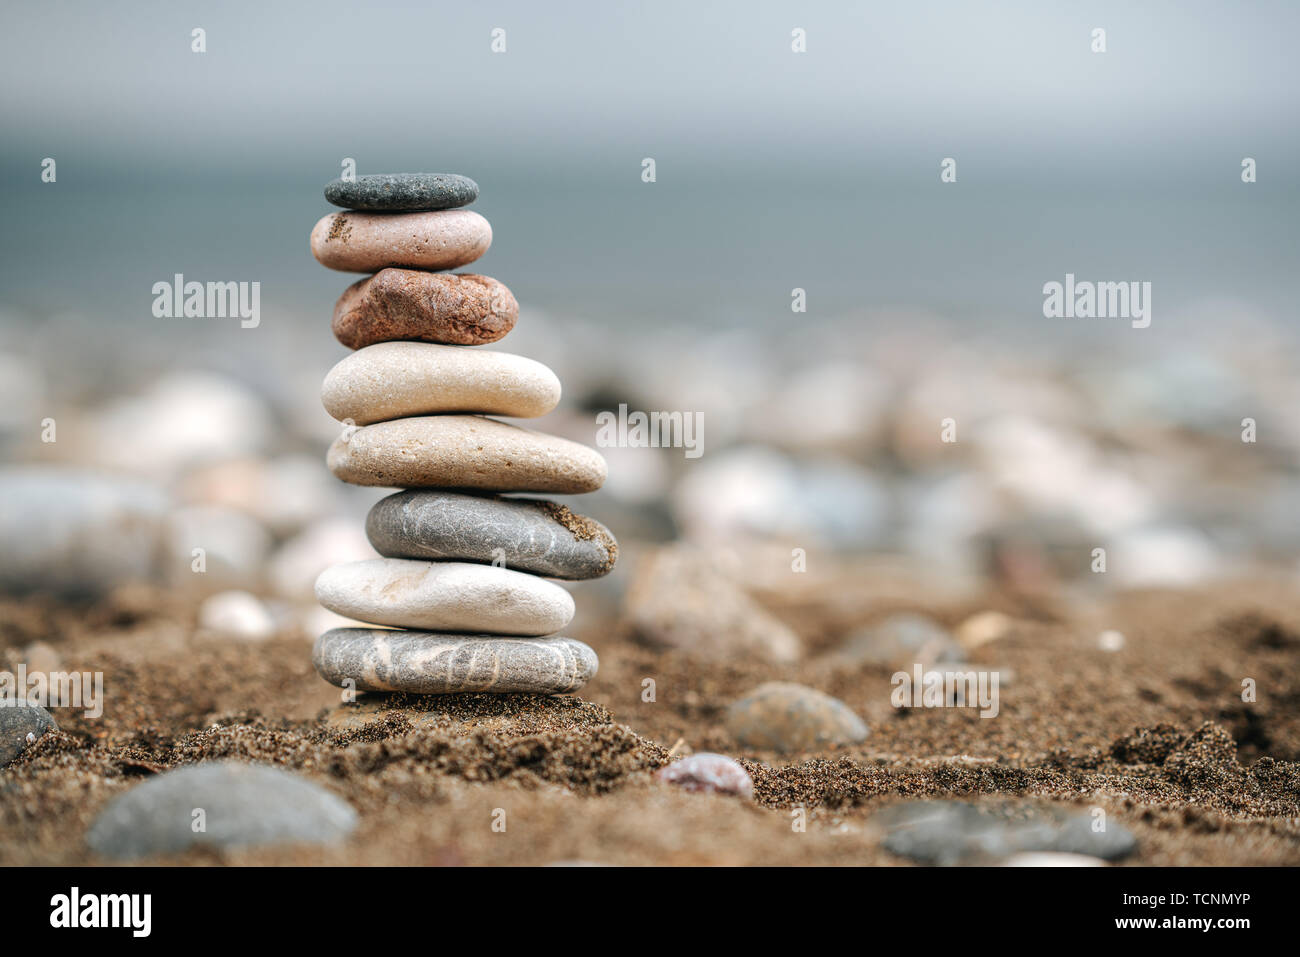 Stapel von Stein über den Sand. Balance und Stabilität Konzept mit Steinen Stockfoto